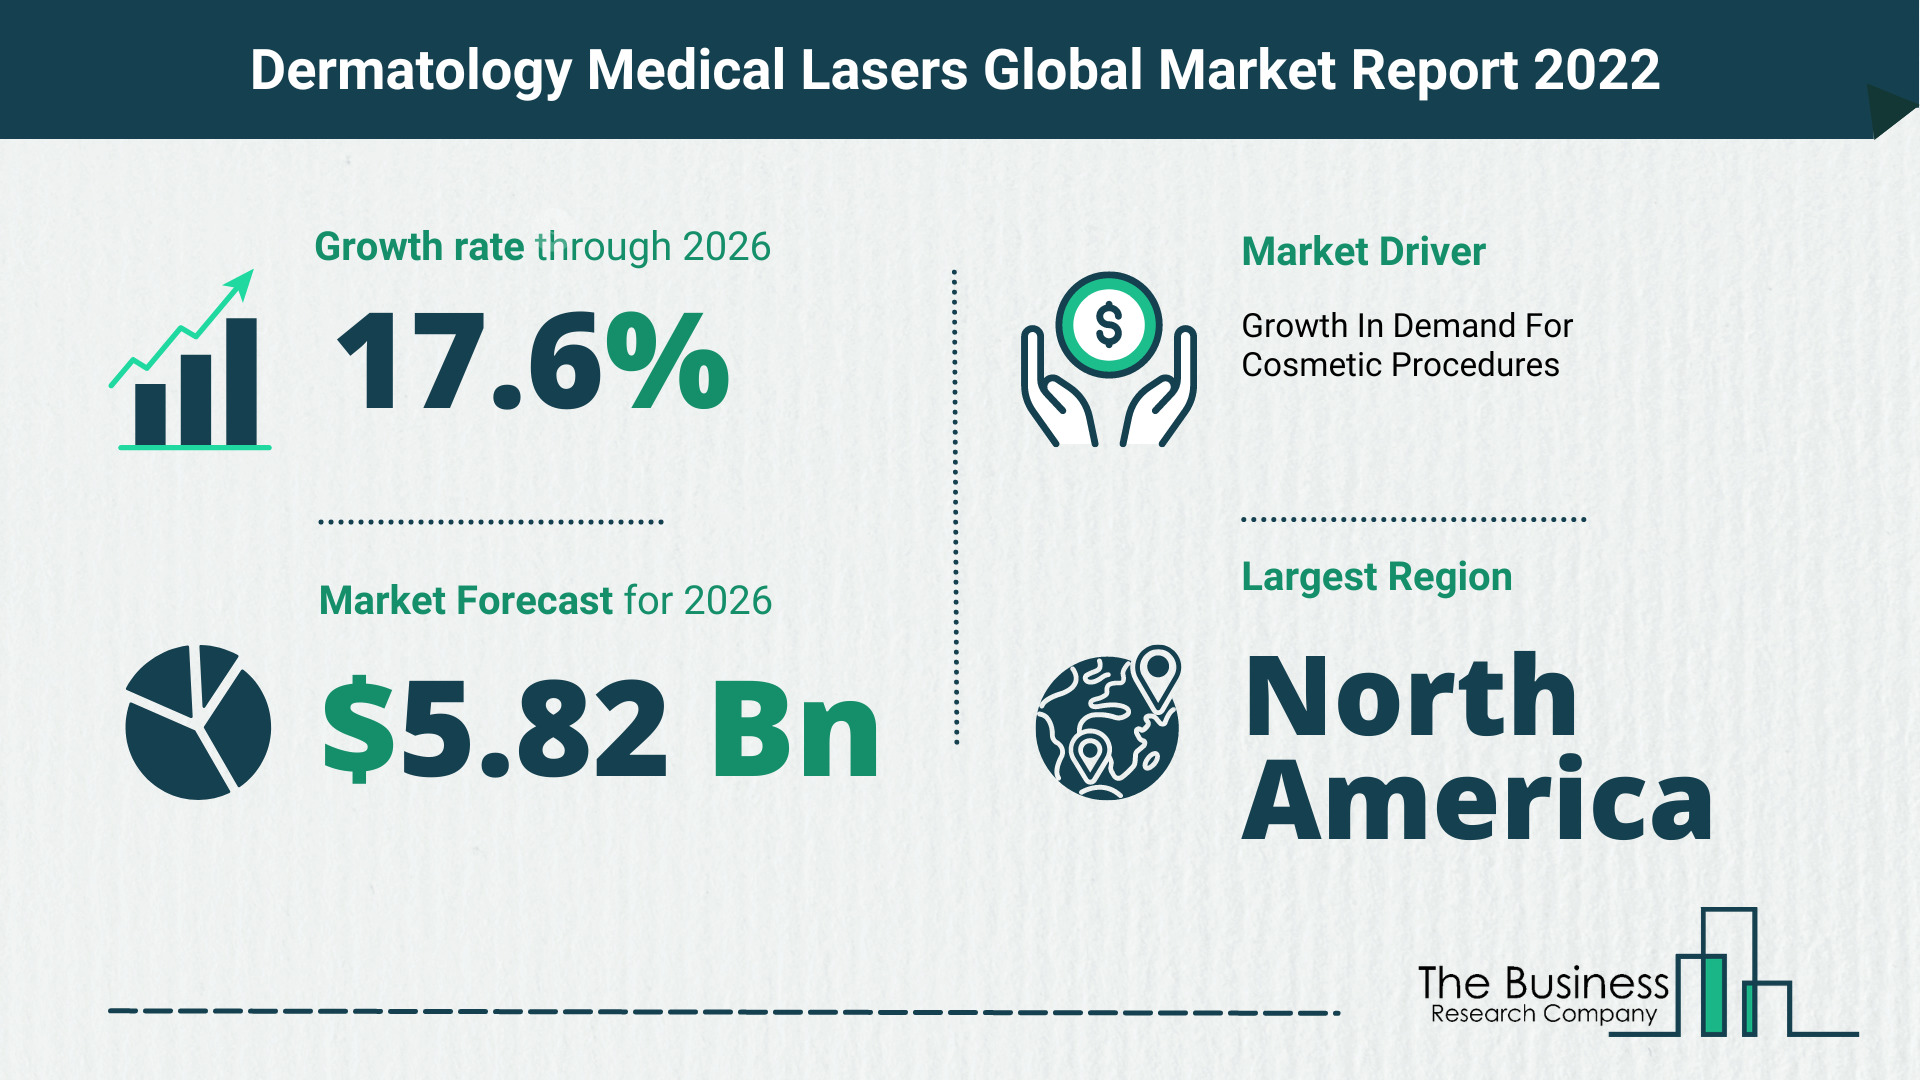 Global Dermatology Medical Lasers Market